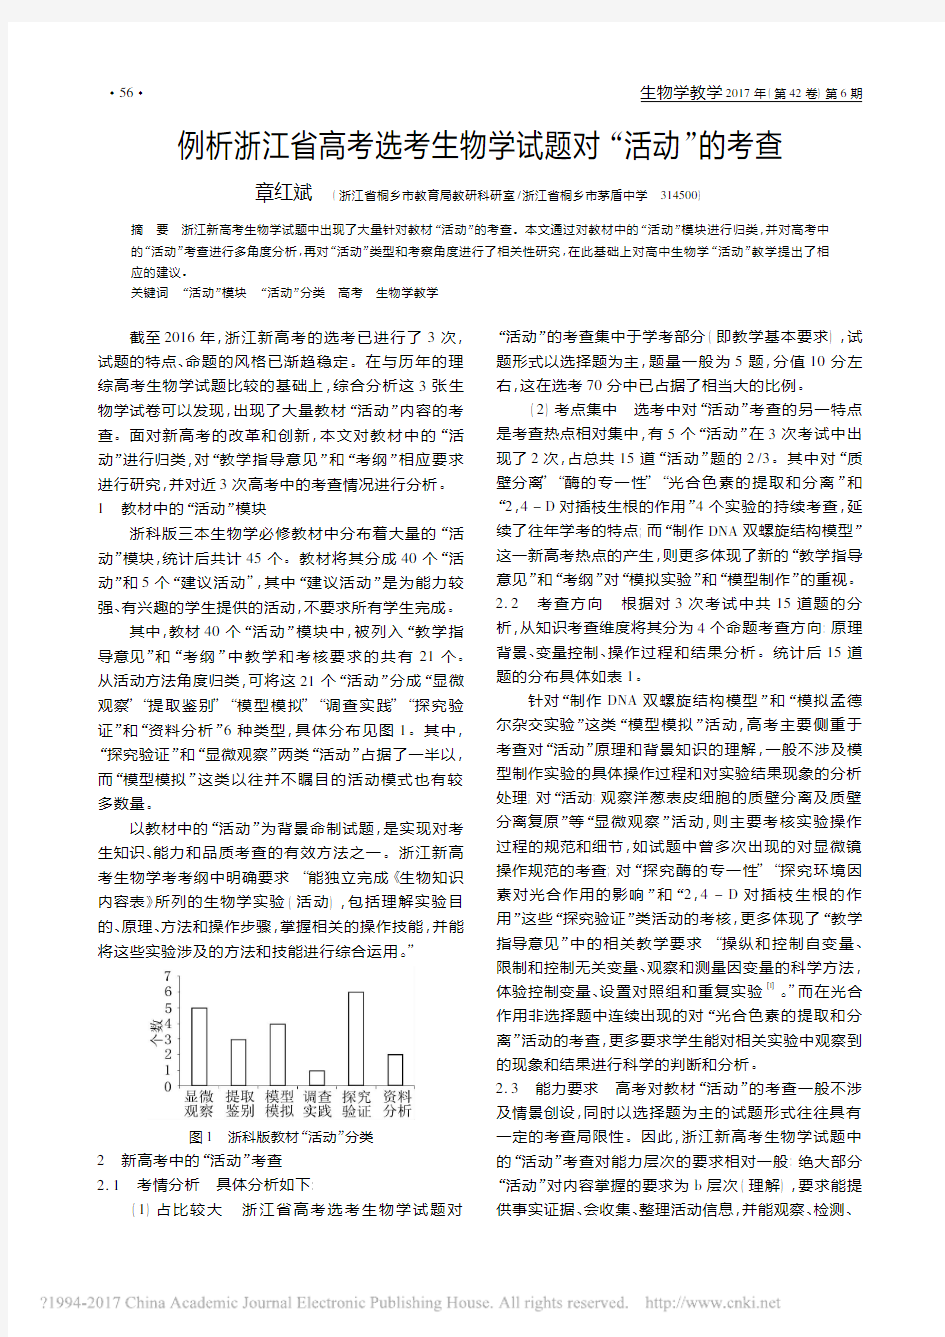 例析浙江省高考选考生物学试题对“活动”的考查